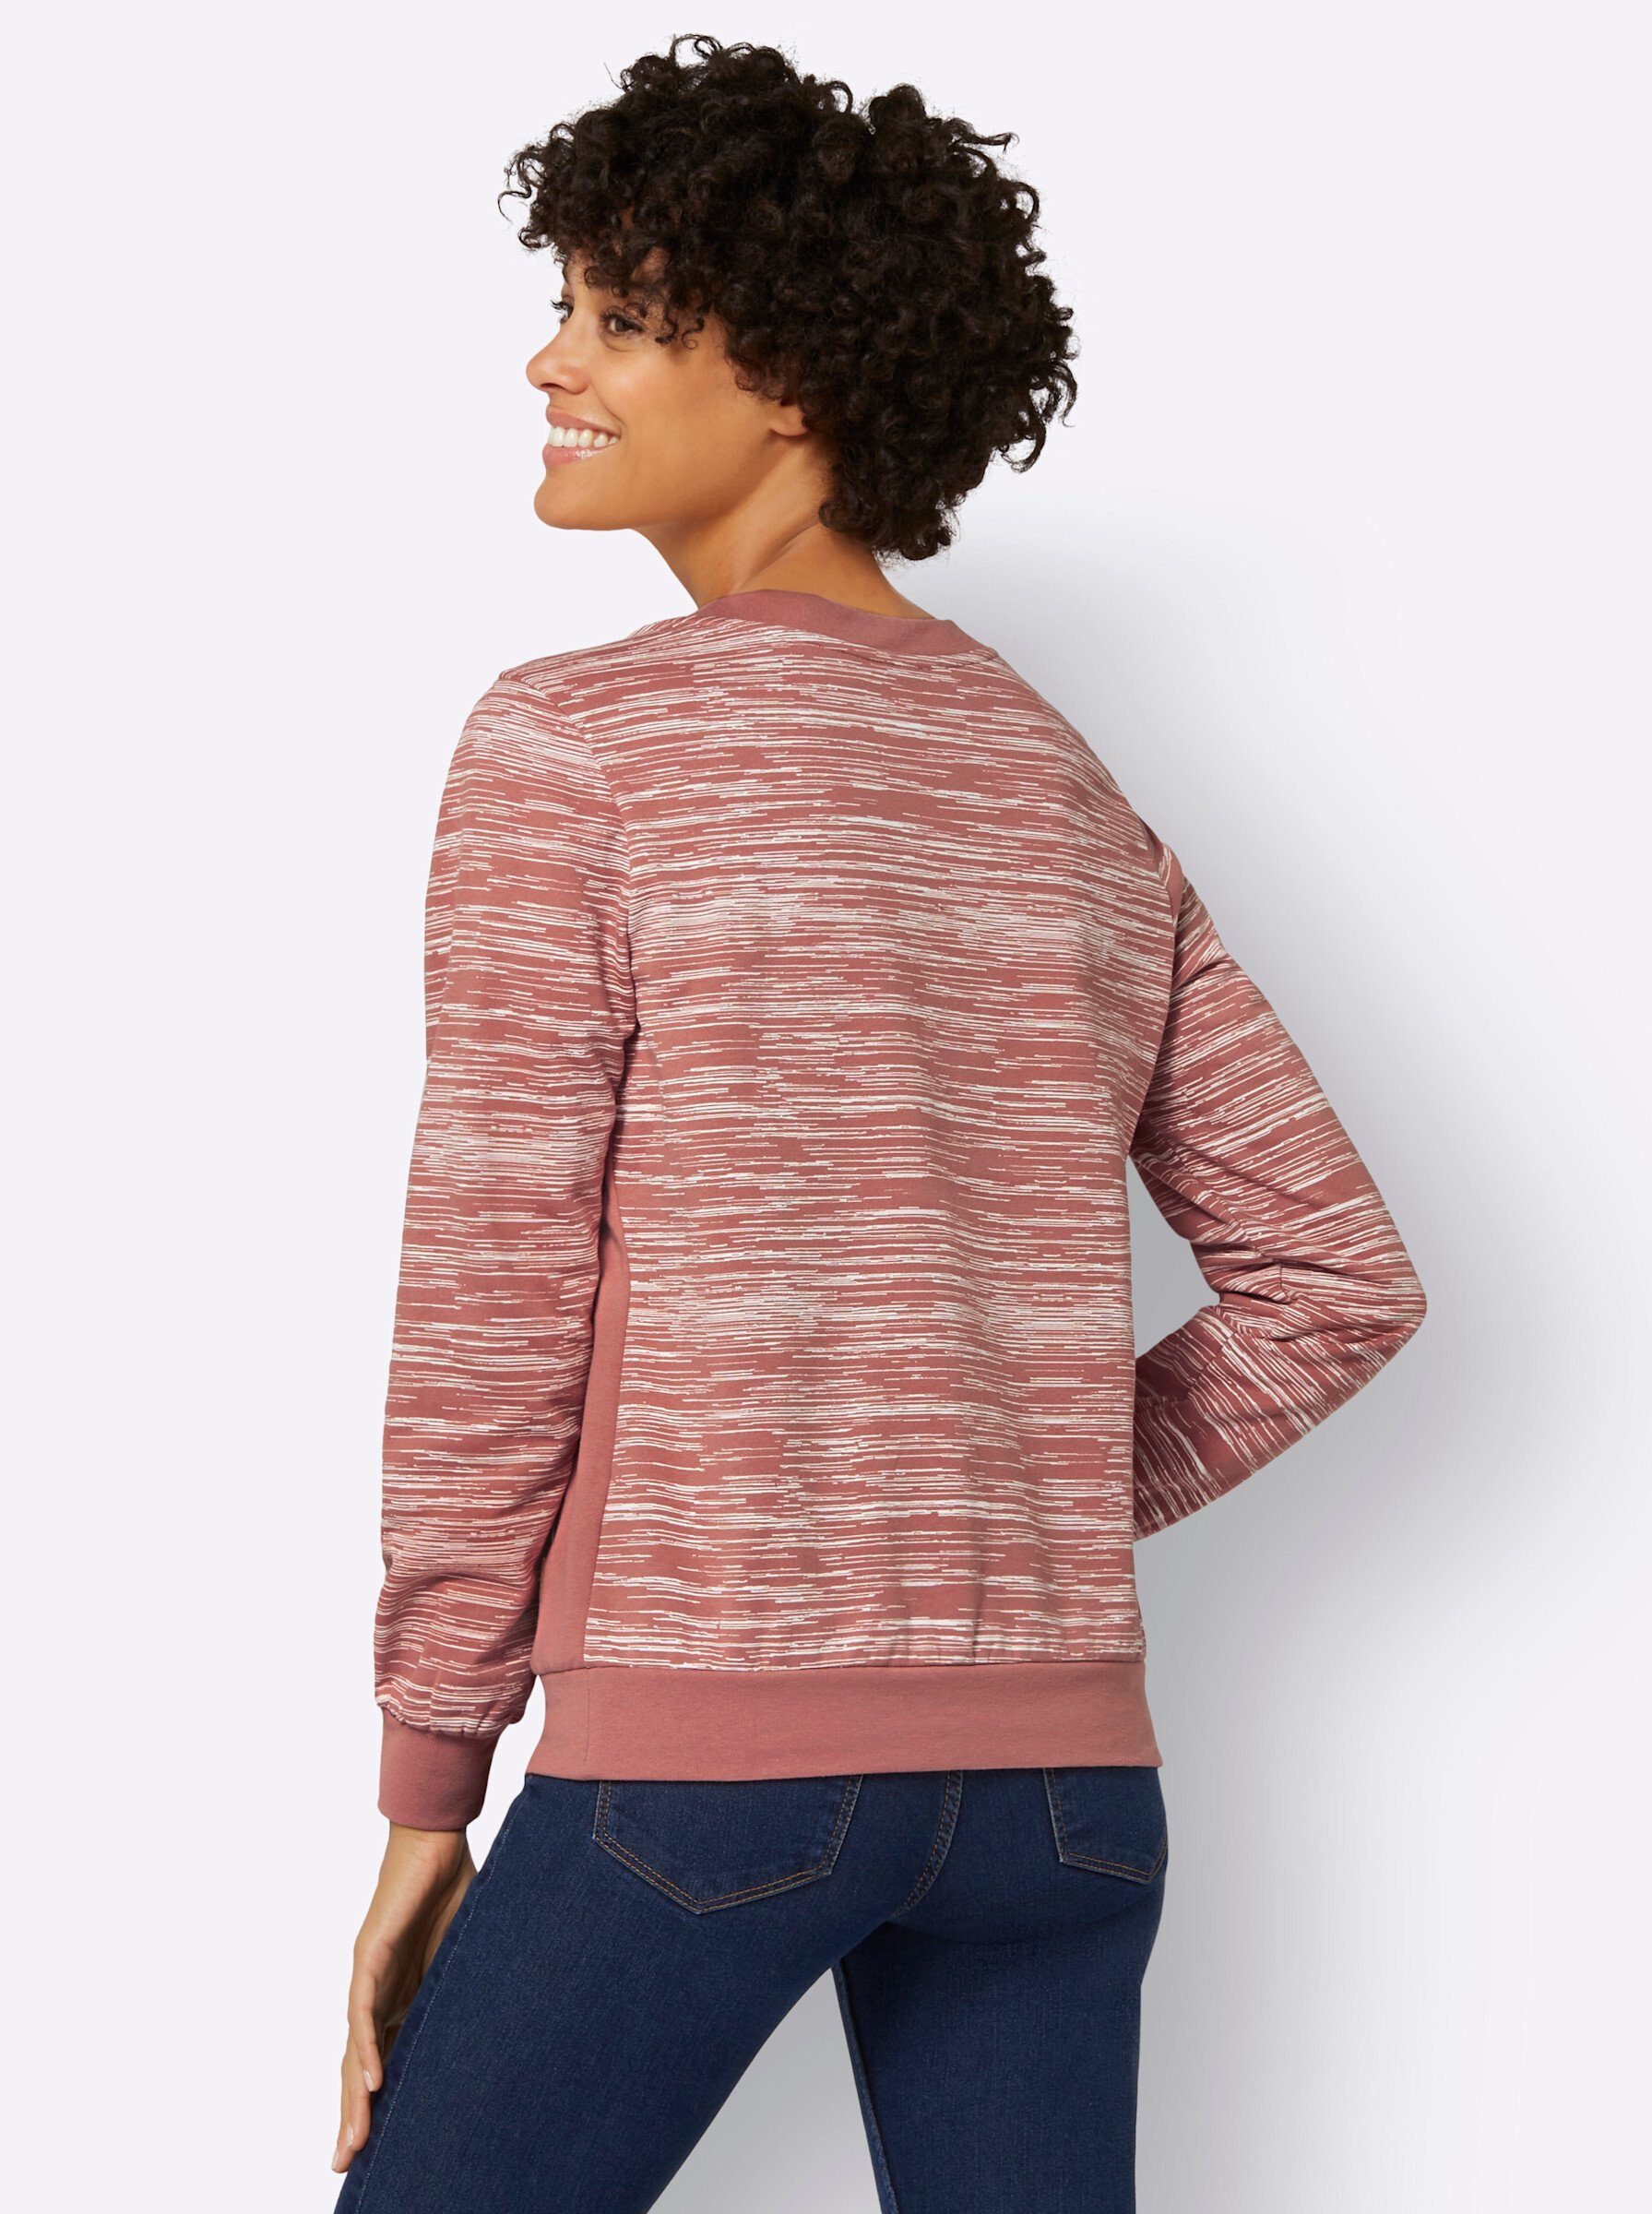 rosenholz-ecru-bedruckt WITT Sweater WEIDEN